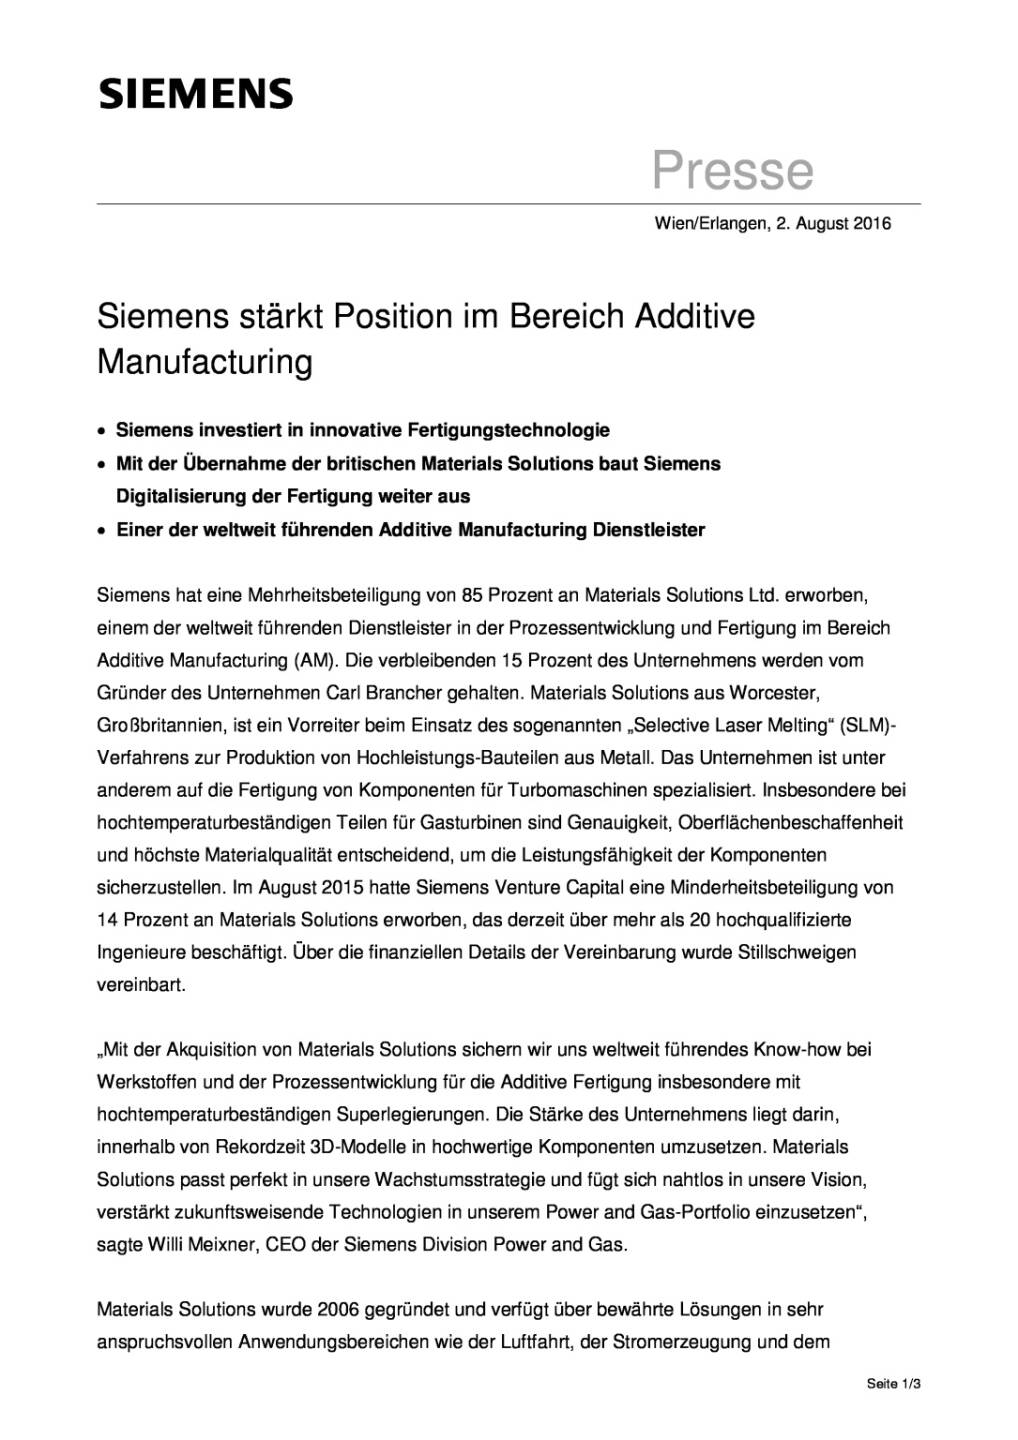 Siemens stärkt Position im Bereich Additive Manufacturing, Seite 1/3, komplettes Dokument unter http://boerse-social.com/static/uploads/file_1555_siemens_starkt_position_im_bereich_additive_manufacturing.pdf